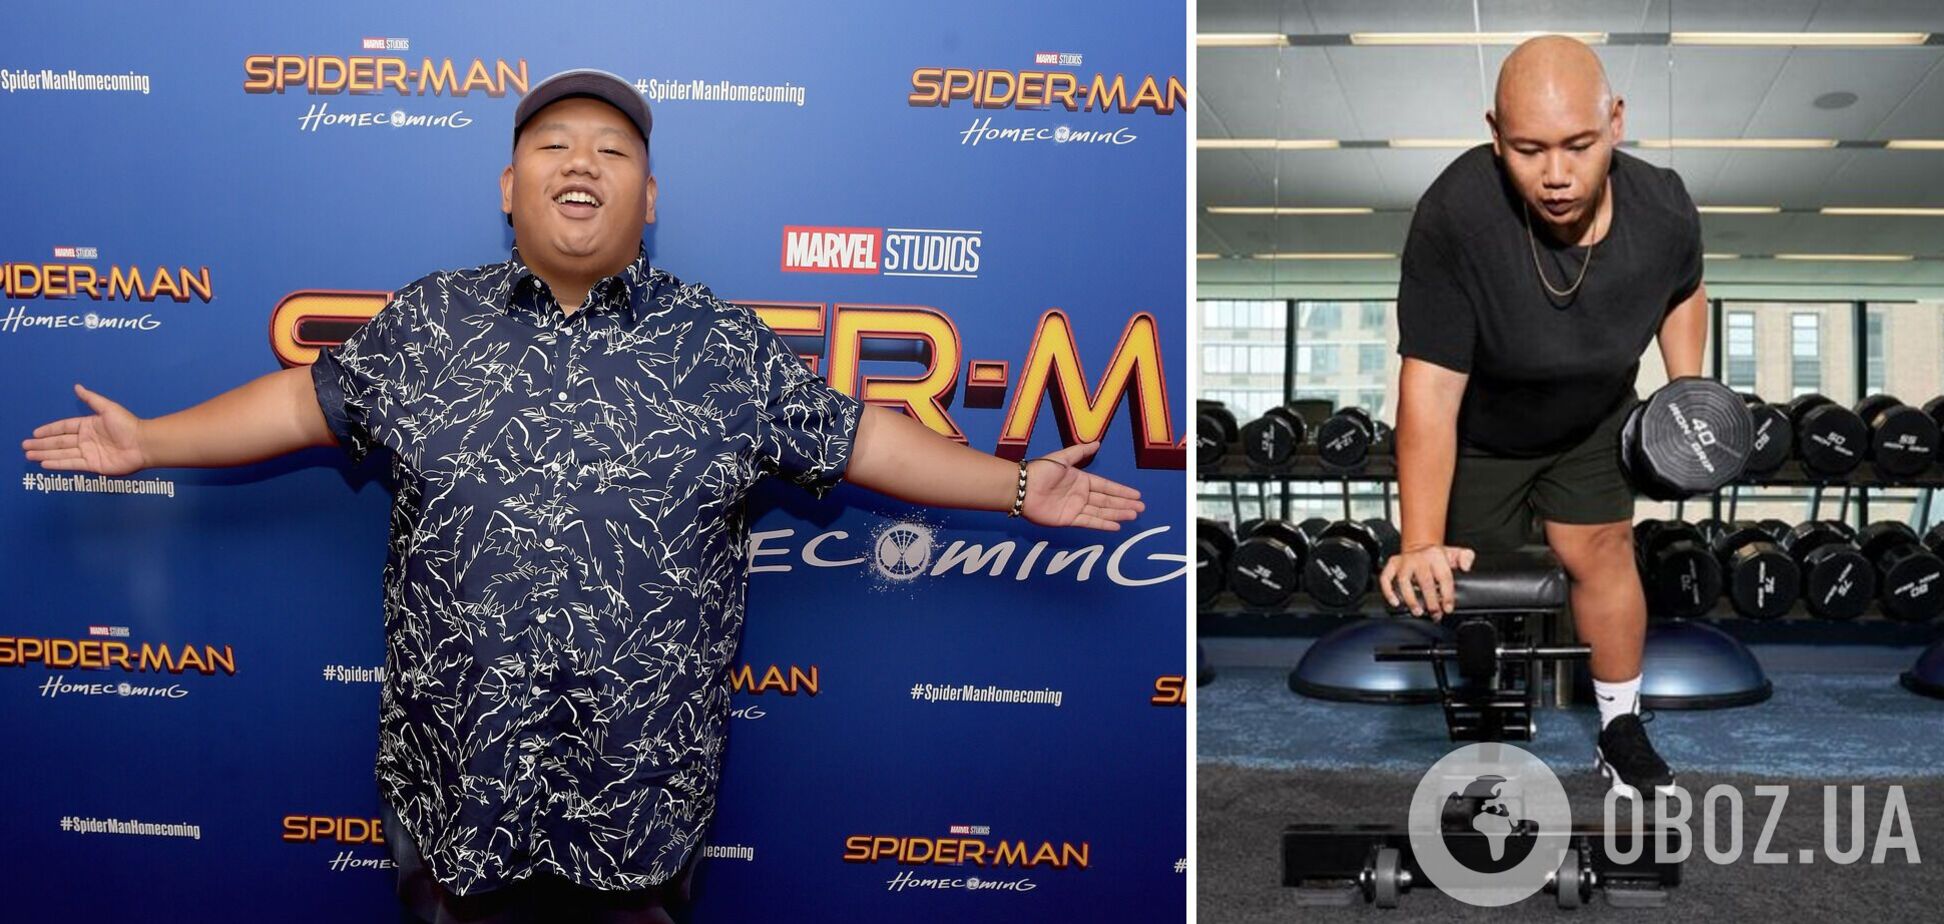 Звезда 'Человека-паука' сбросил 50 кг и раскрыл секрет своего похудения. Фото до и после